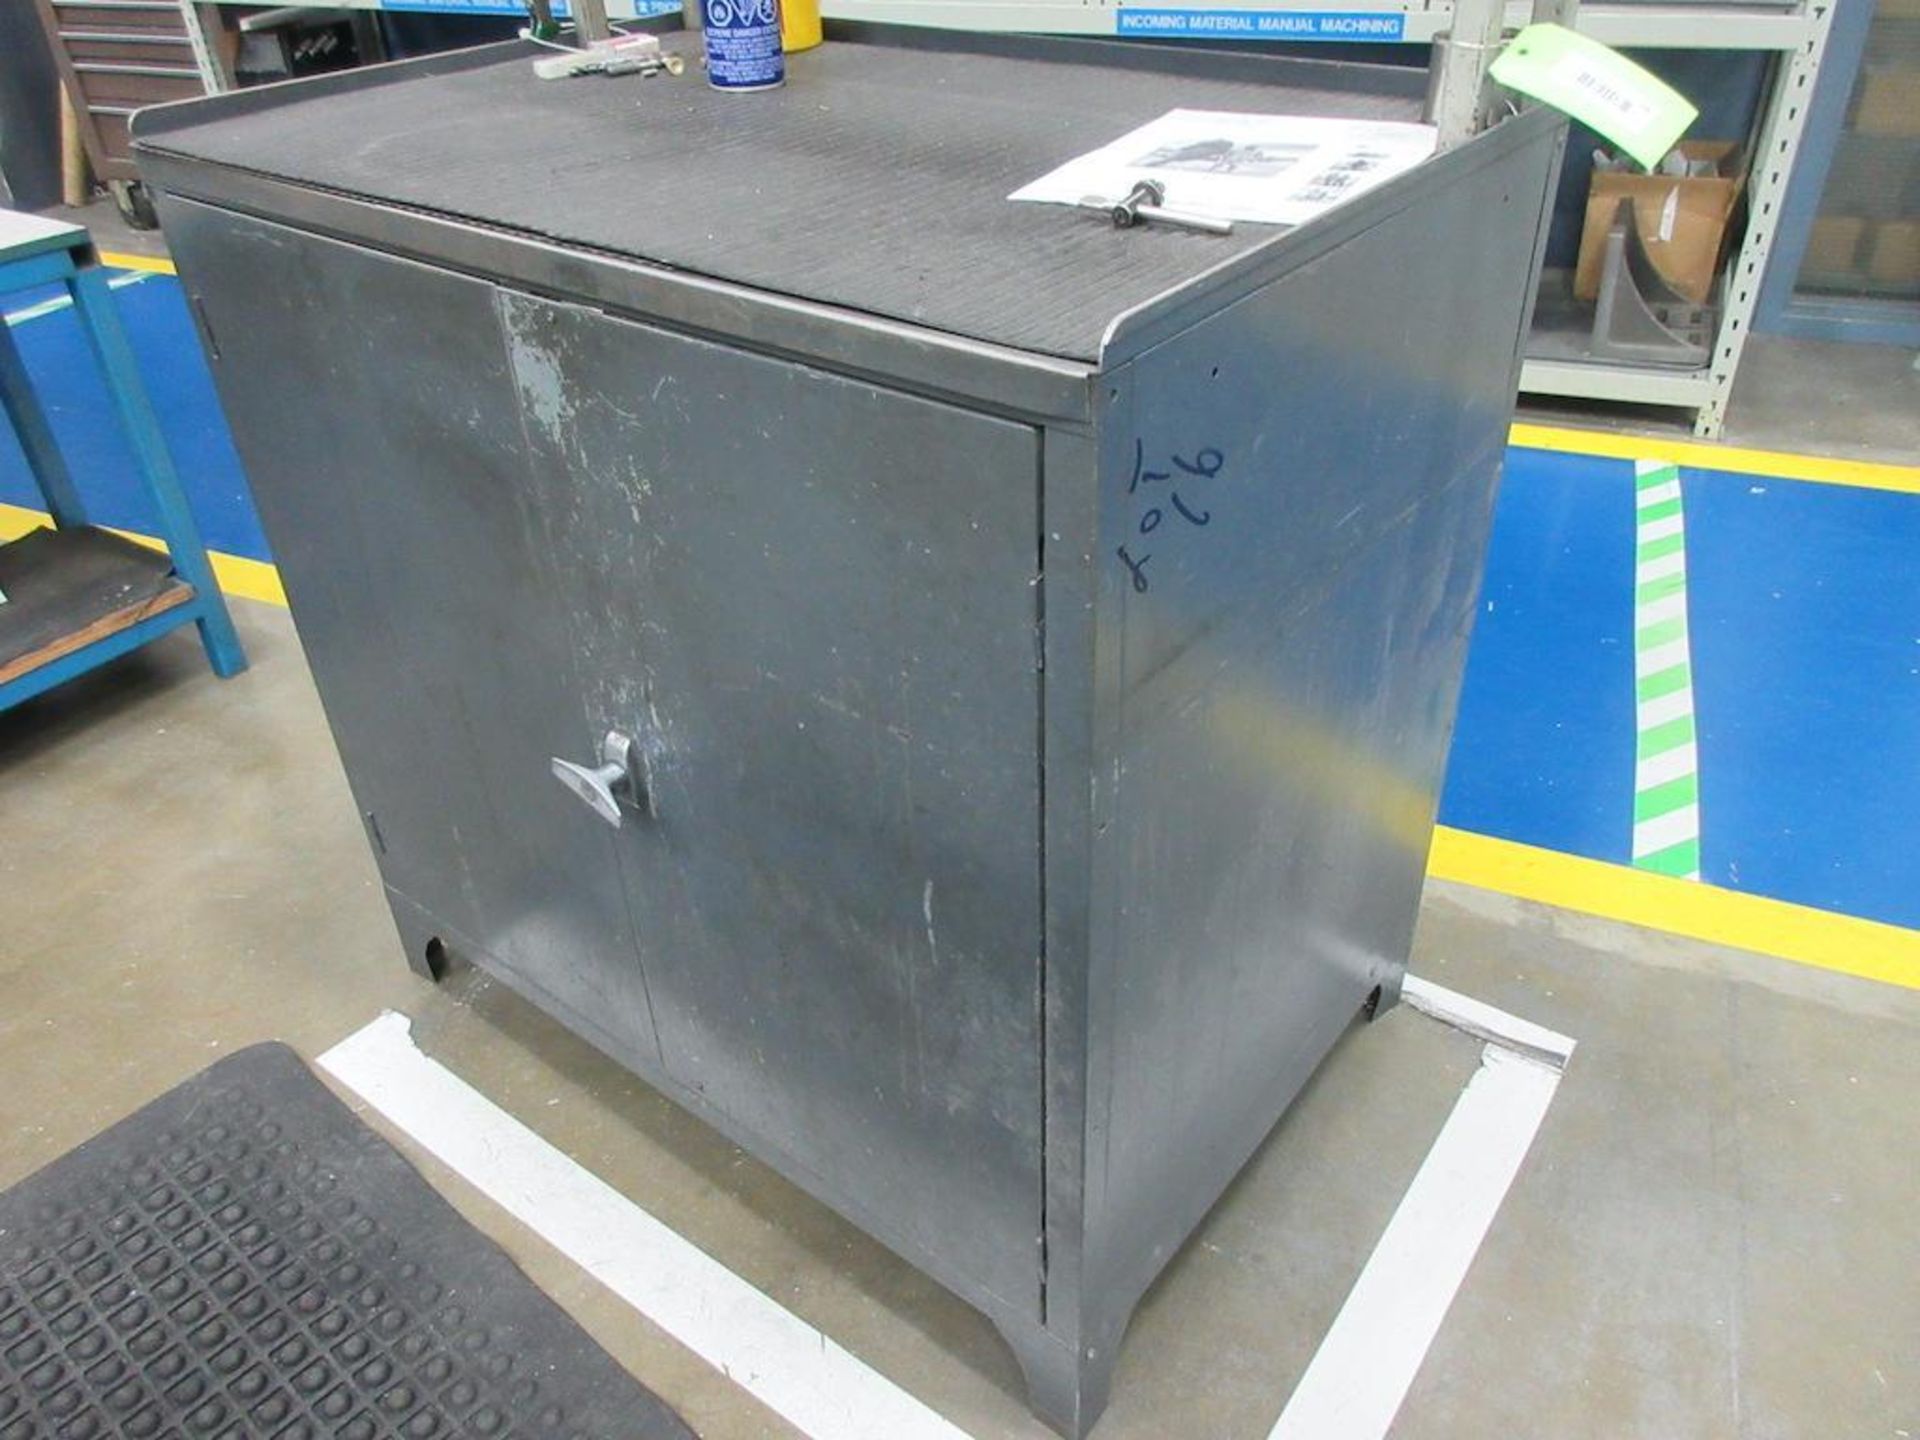 (3) Assorted grey steel 36" x 24" 2 door tool cabinets